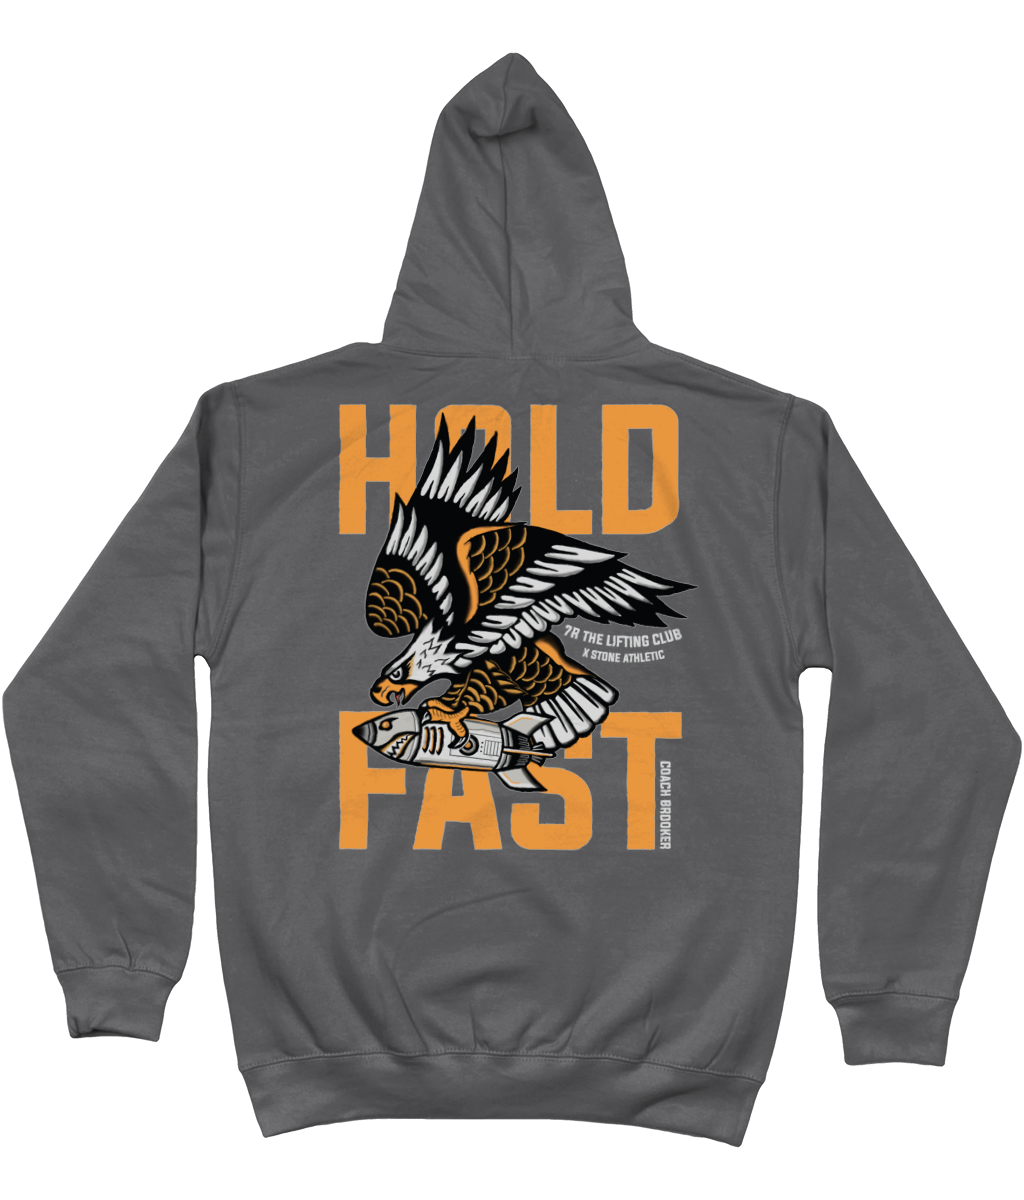 Hold Fast Hoodie - 7R Lifting Club